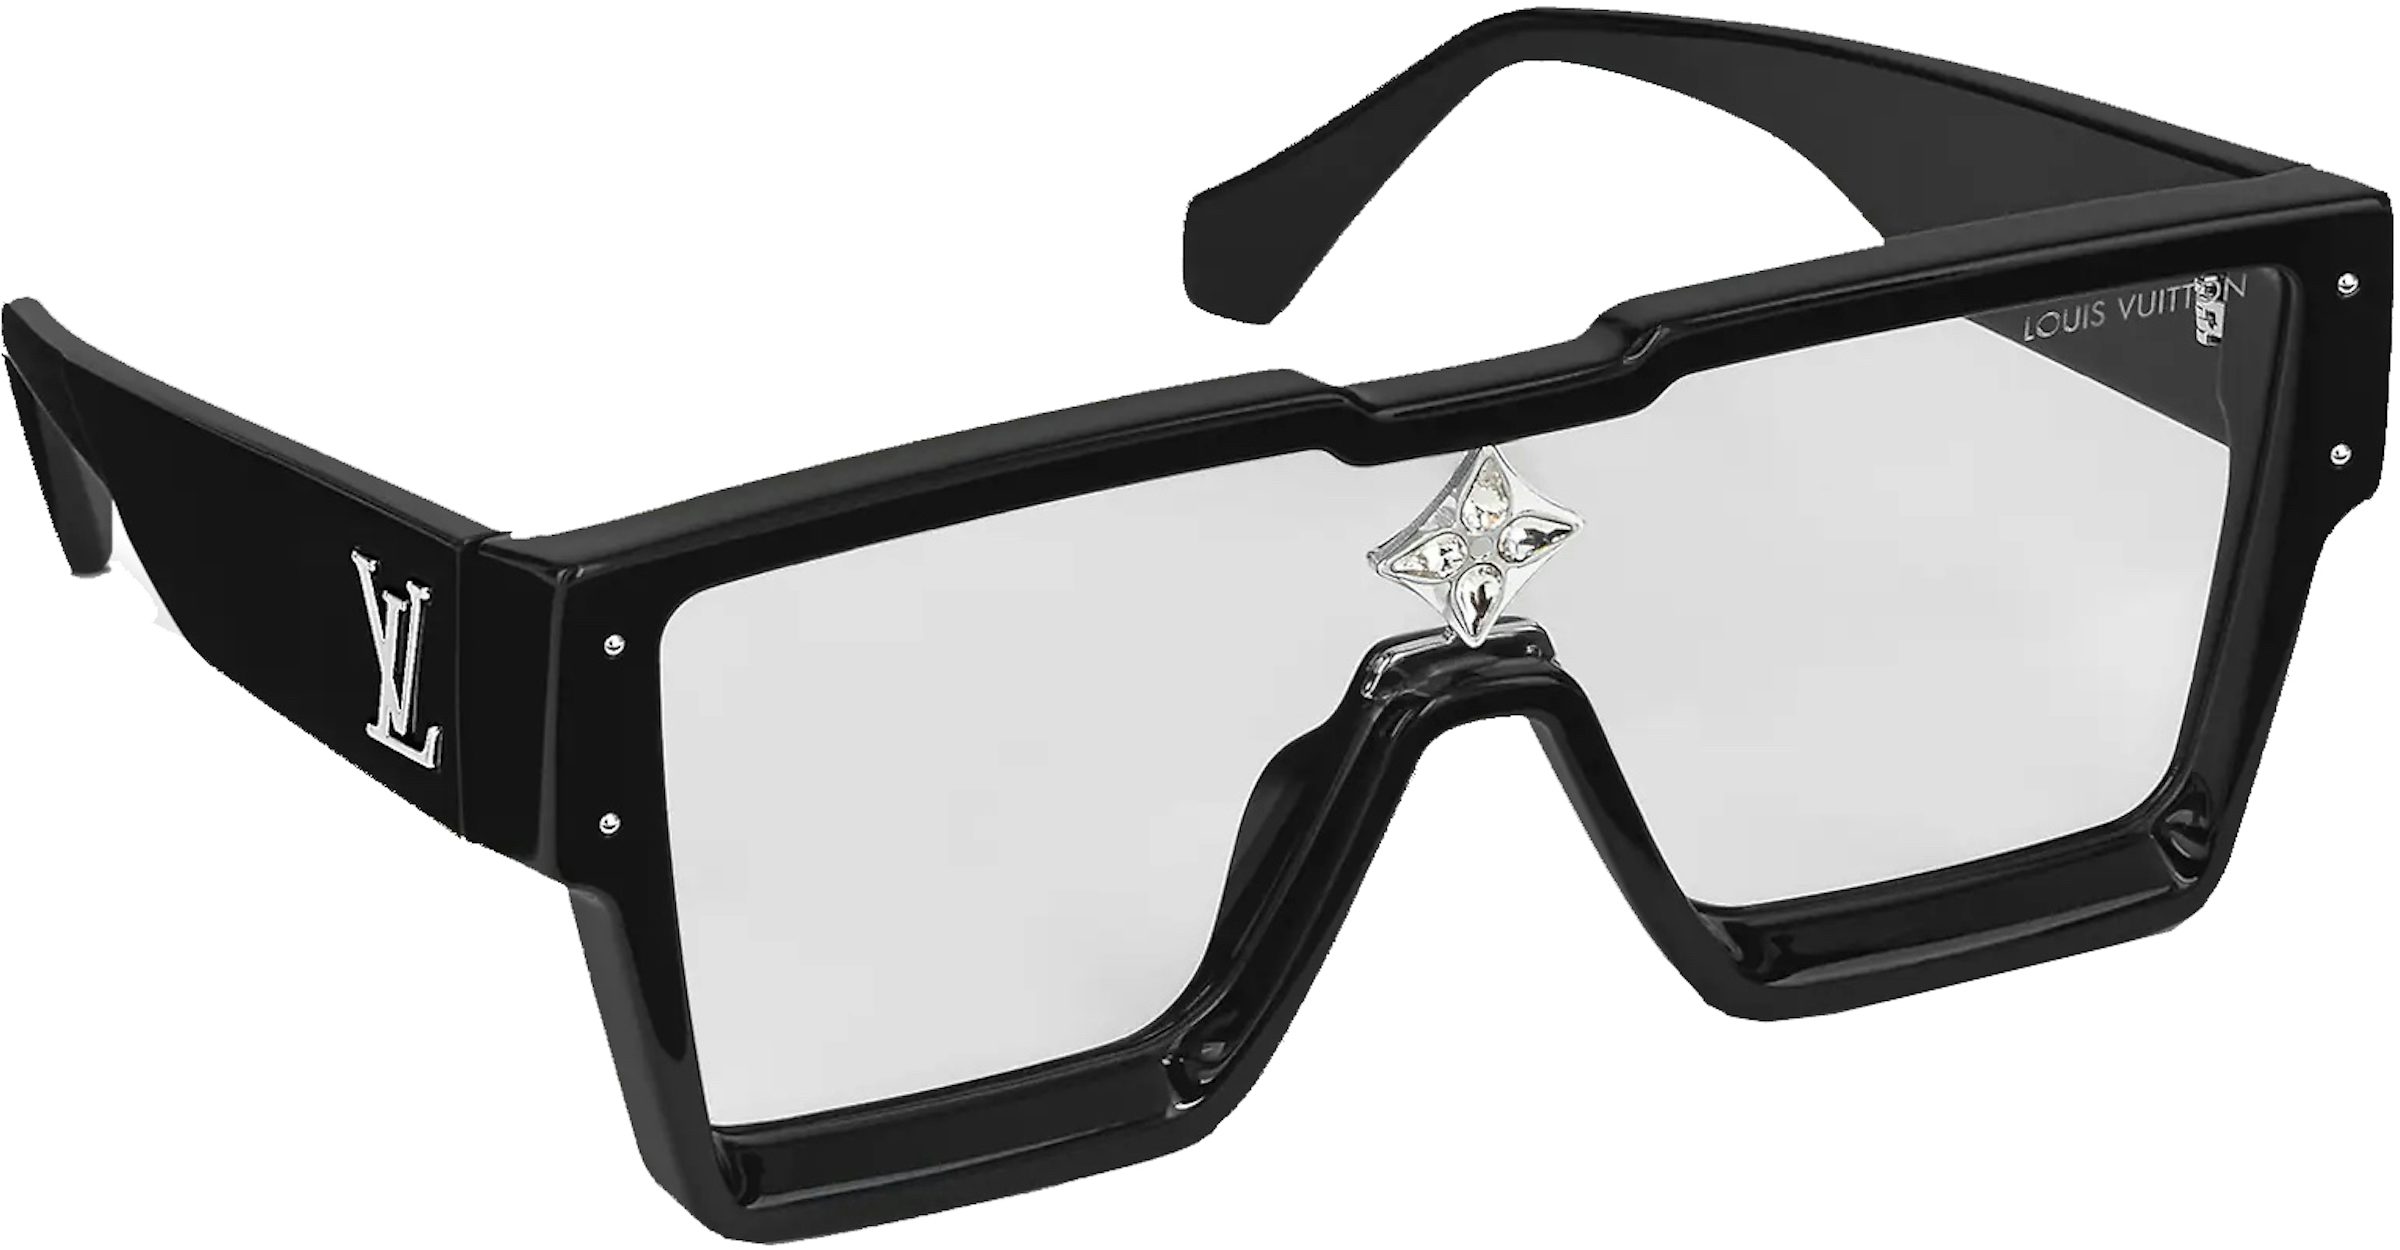 Louis Vuitton 1.1 Evidence Sport Sunglasses Black Acetate. Size U